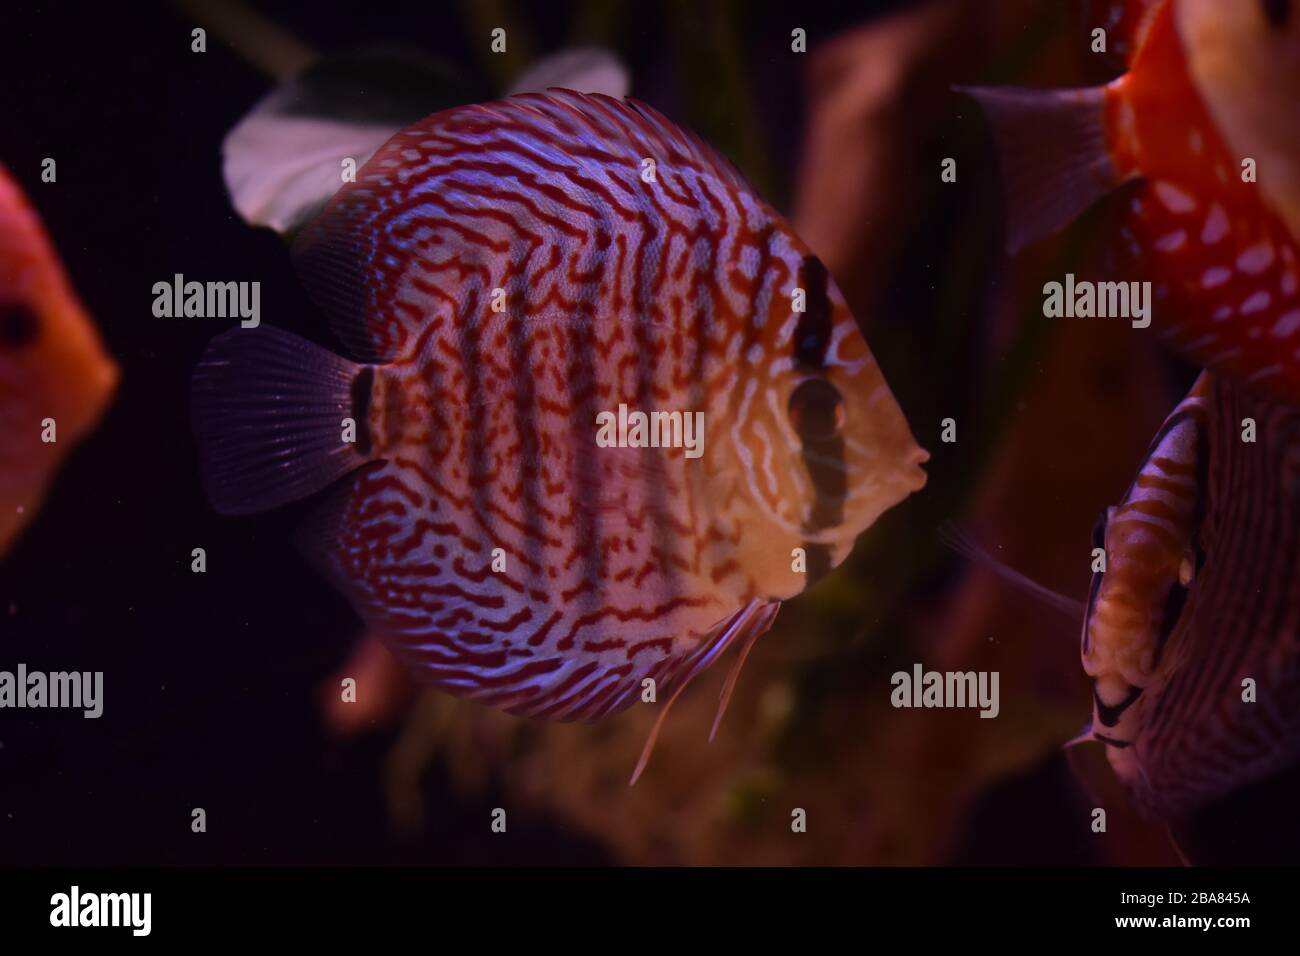 Groupe de poissons à discus dans l'aquarium, poissons tropicaux multicolores, Sympsodon discus de l'Amazone Banque D'Images